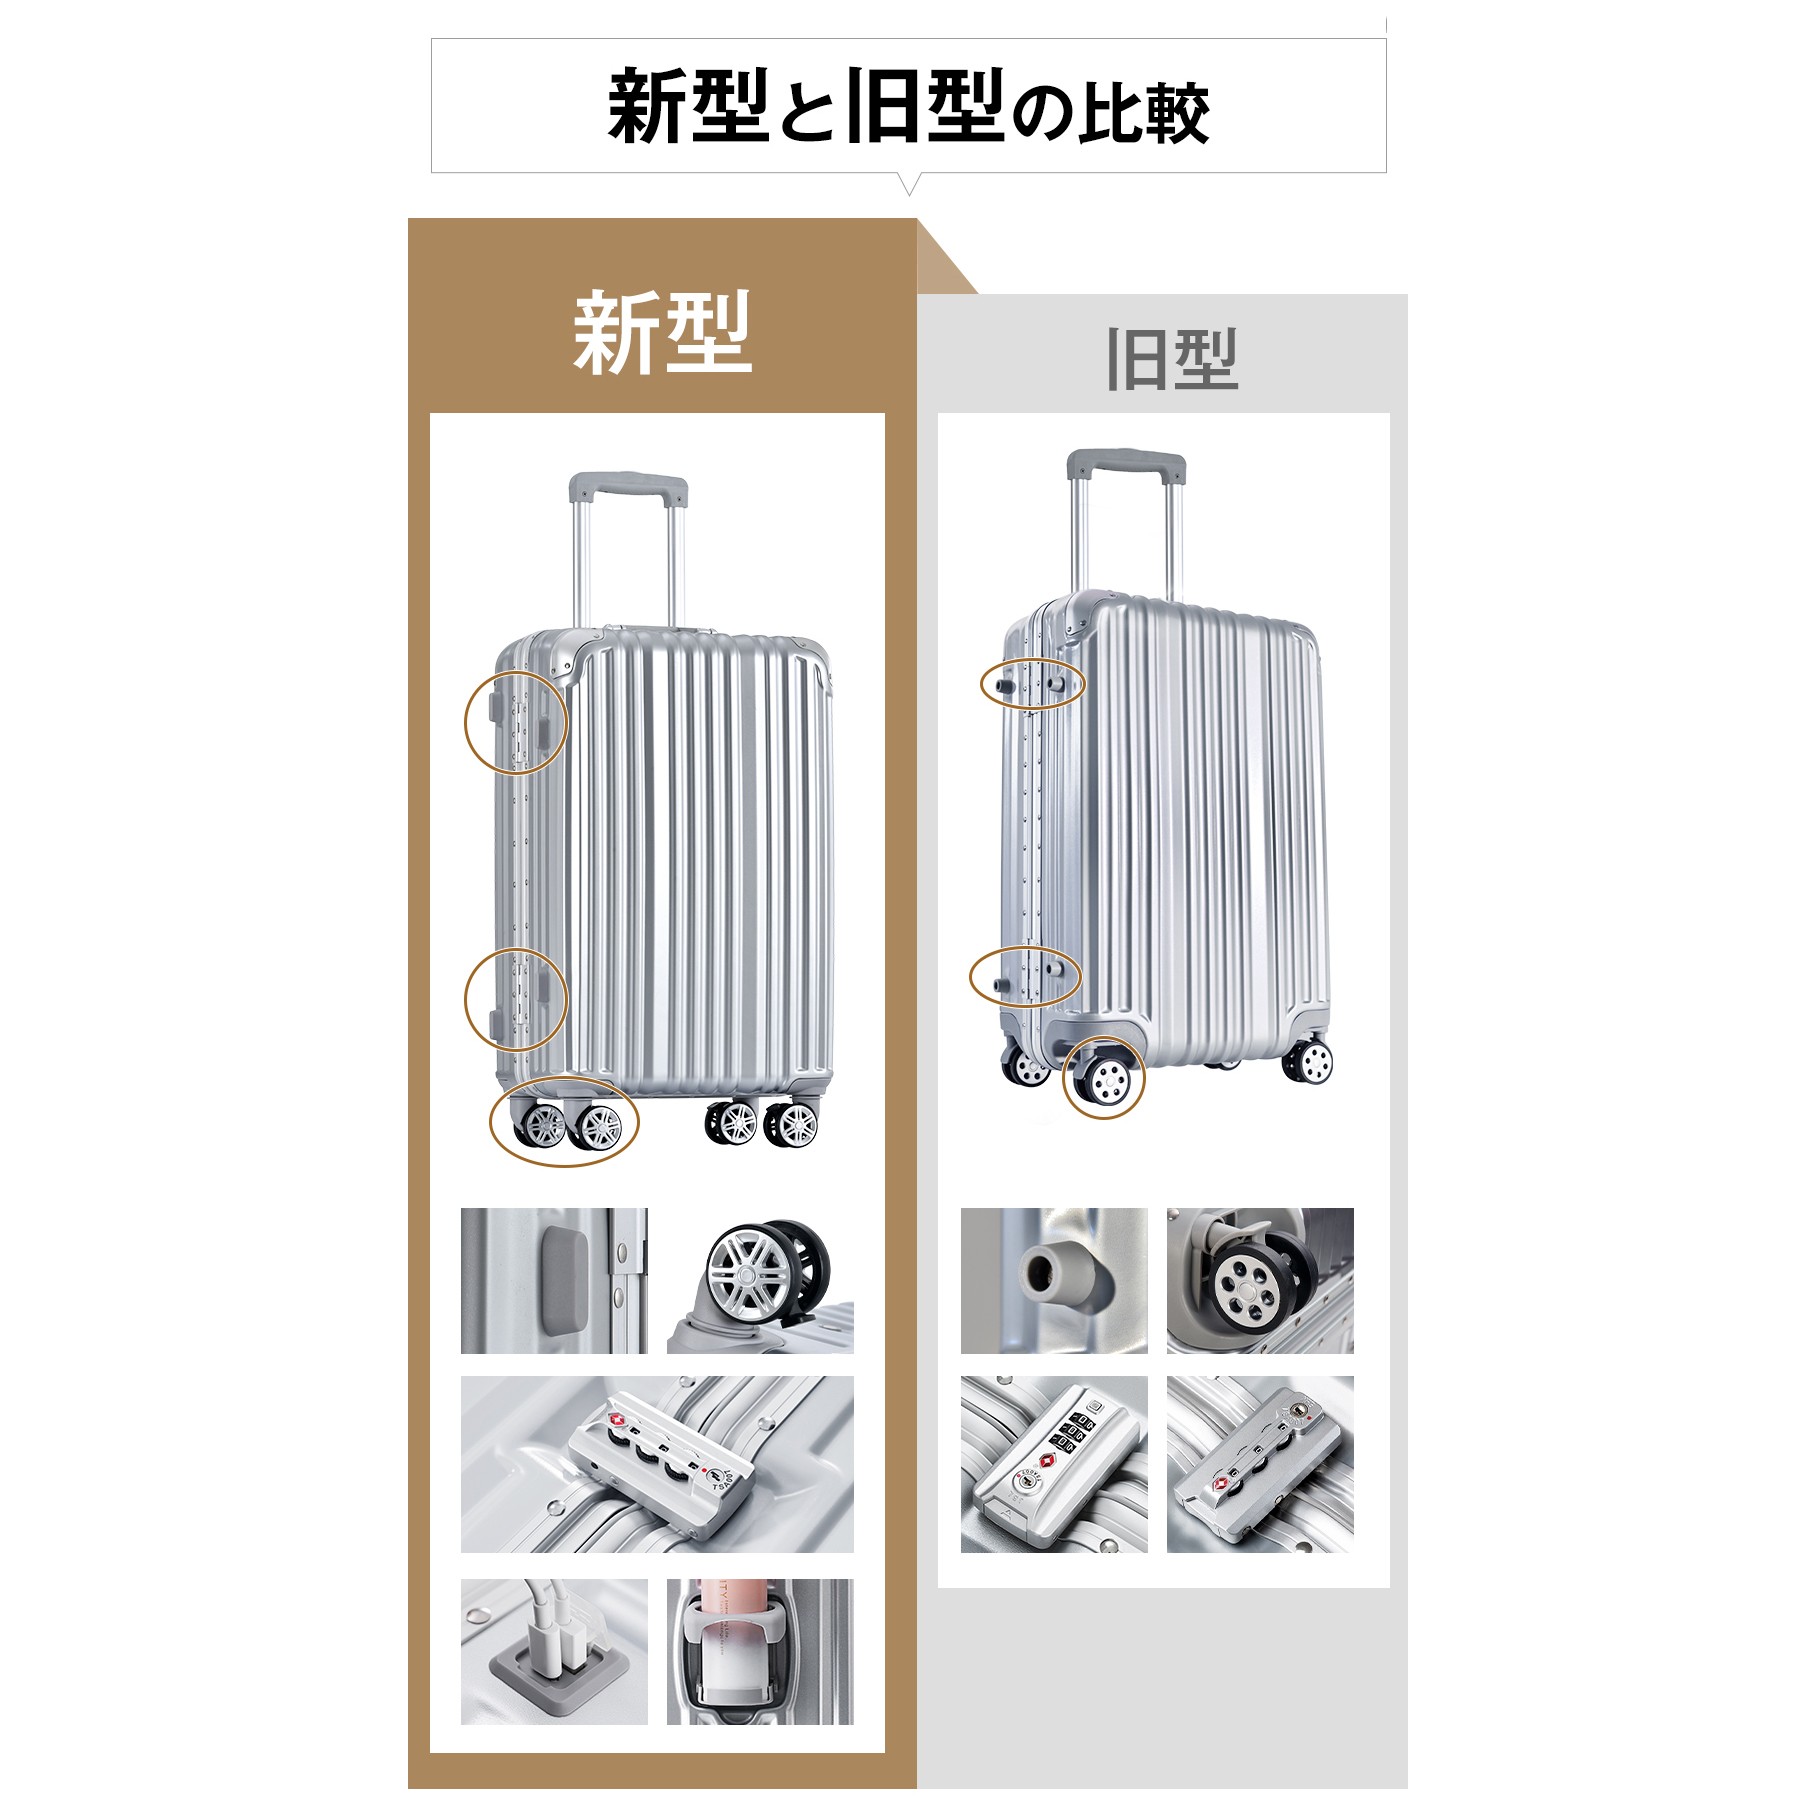 スーツケース 機内持ち込み Sサイズ 軽量 アルミフレーム キャリーケース キャリーバッグ ストッパー付き 小型 USBポート付き 1~3泊用  TSAロック TANOBI T1169